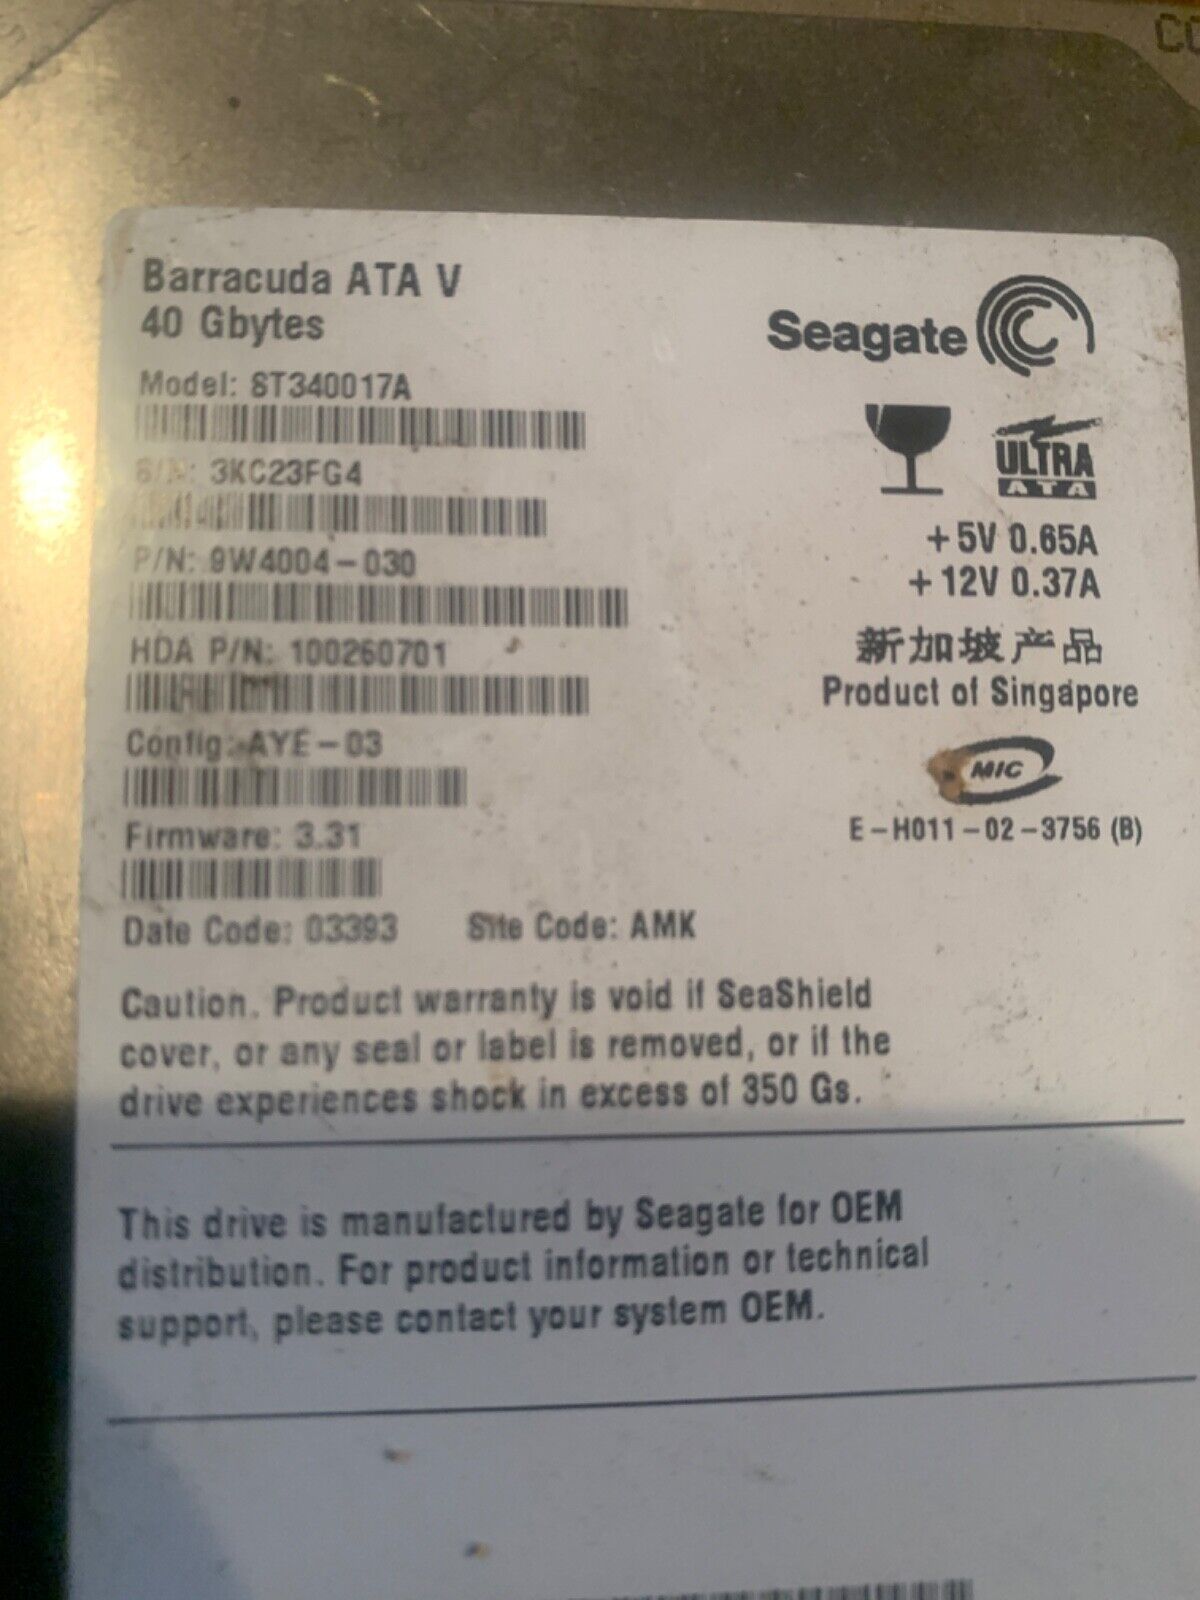 Hard Drive 40 GB IDE Seagate Barracuda ATA IV ST340017A 3.5